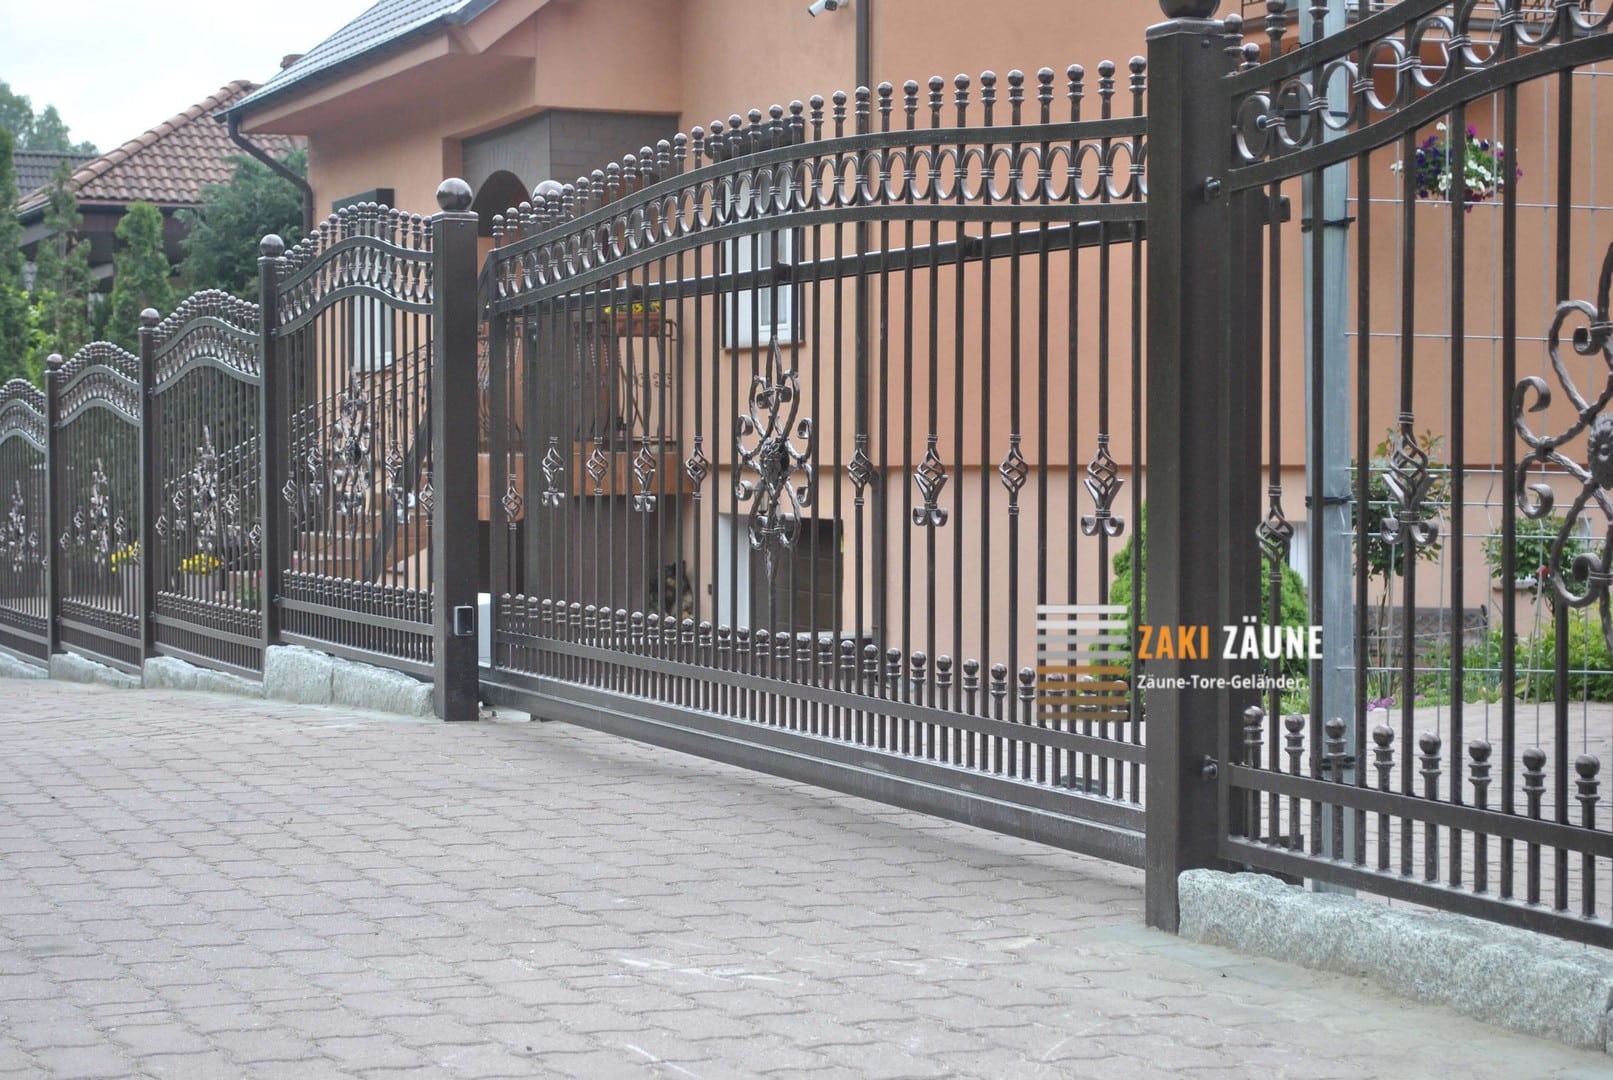 Hochwertige Tore für Ihr Zuhause von Zaki Zäune